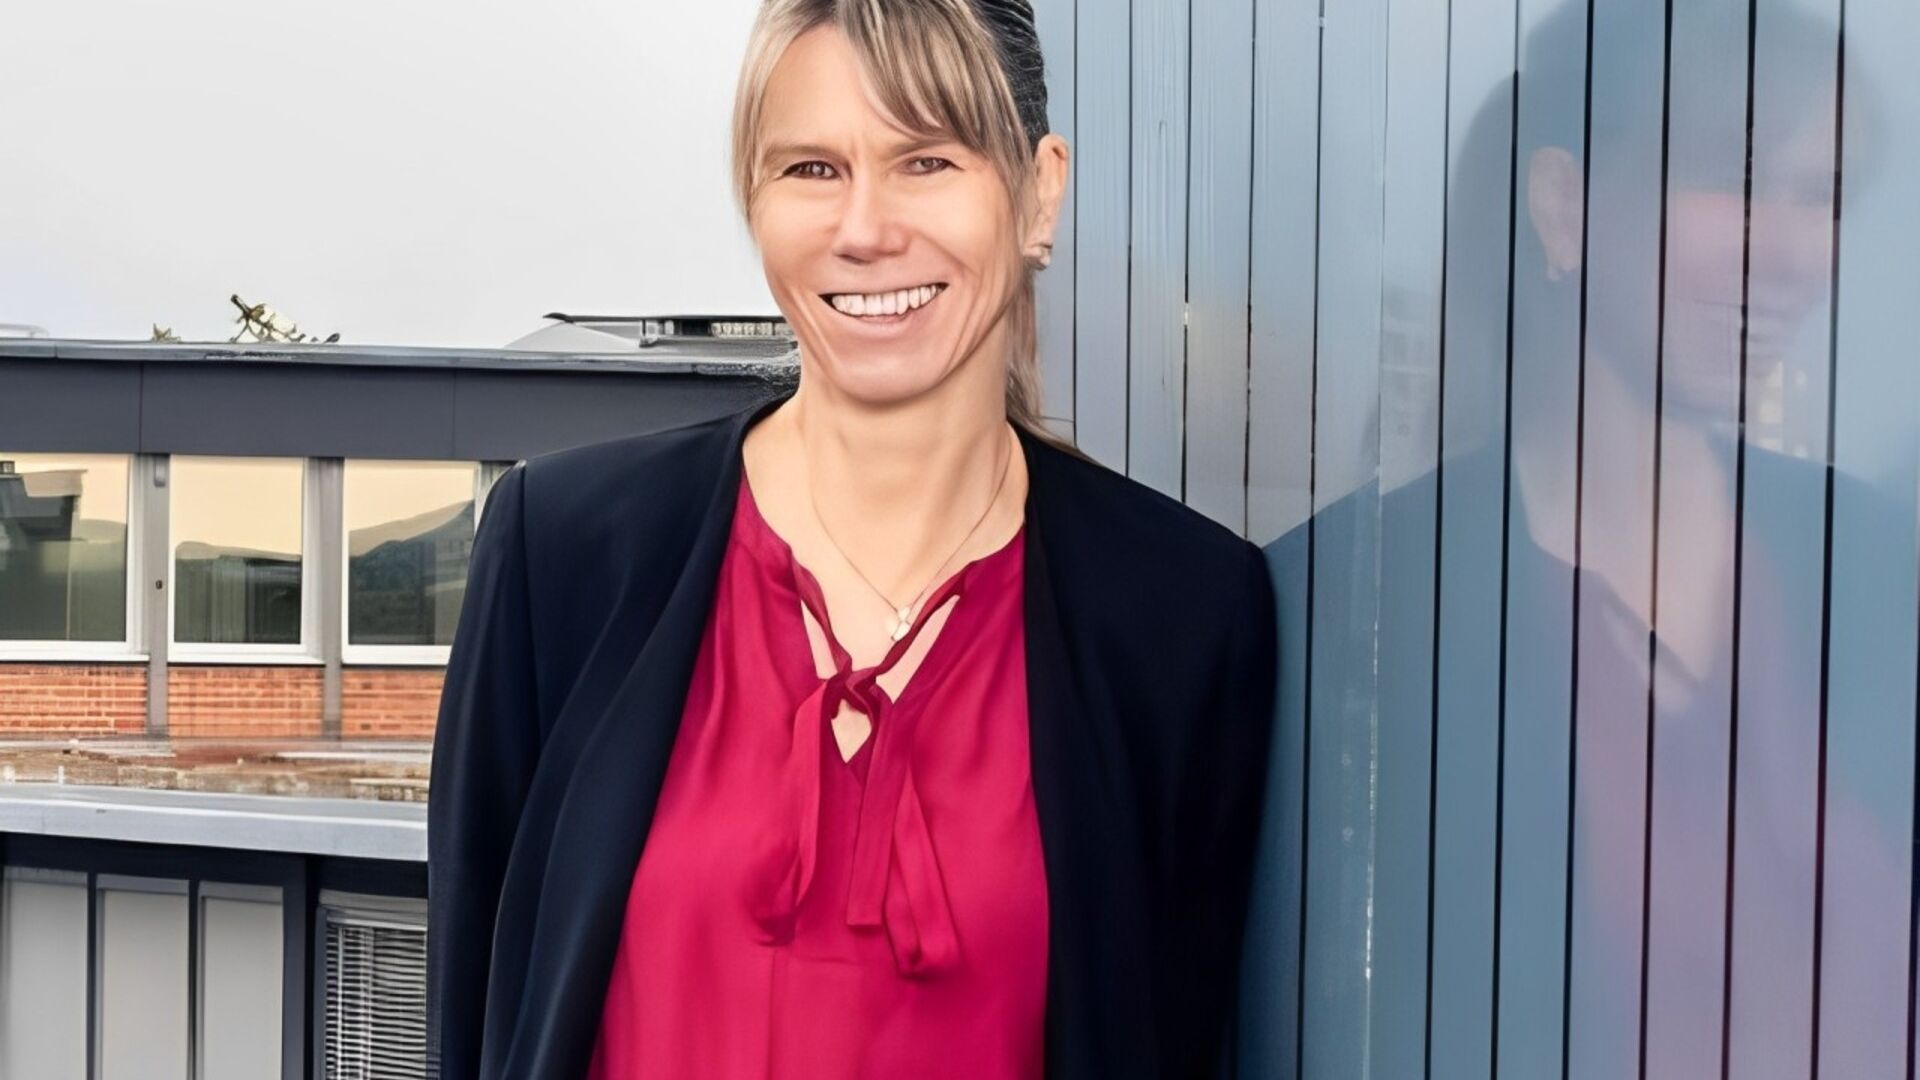 Tanja Zimmermann: interview med direktøren for EMPA om det schweiziske projekt "Mining the Atmosphere" i samarbejde med EAWAG